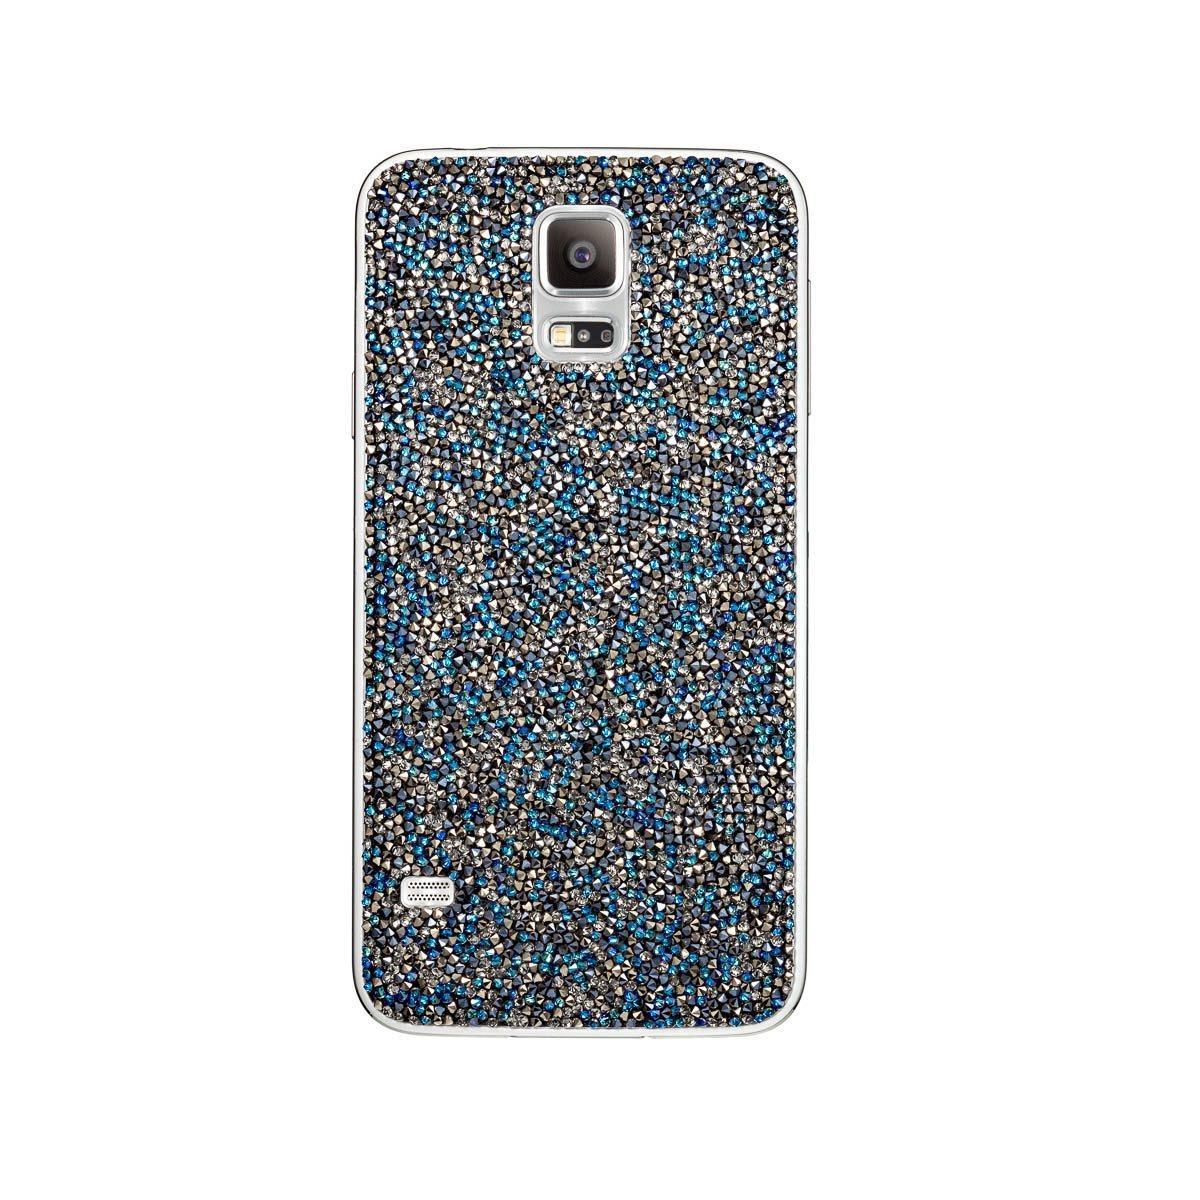 Il Galaxy S5 con la cover di diamanti Swarovski 02